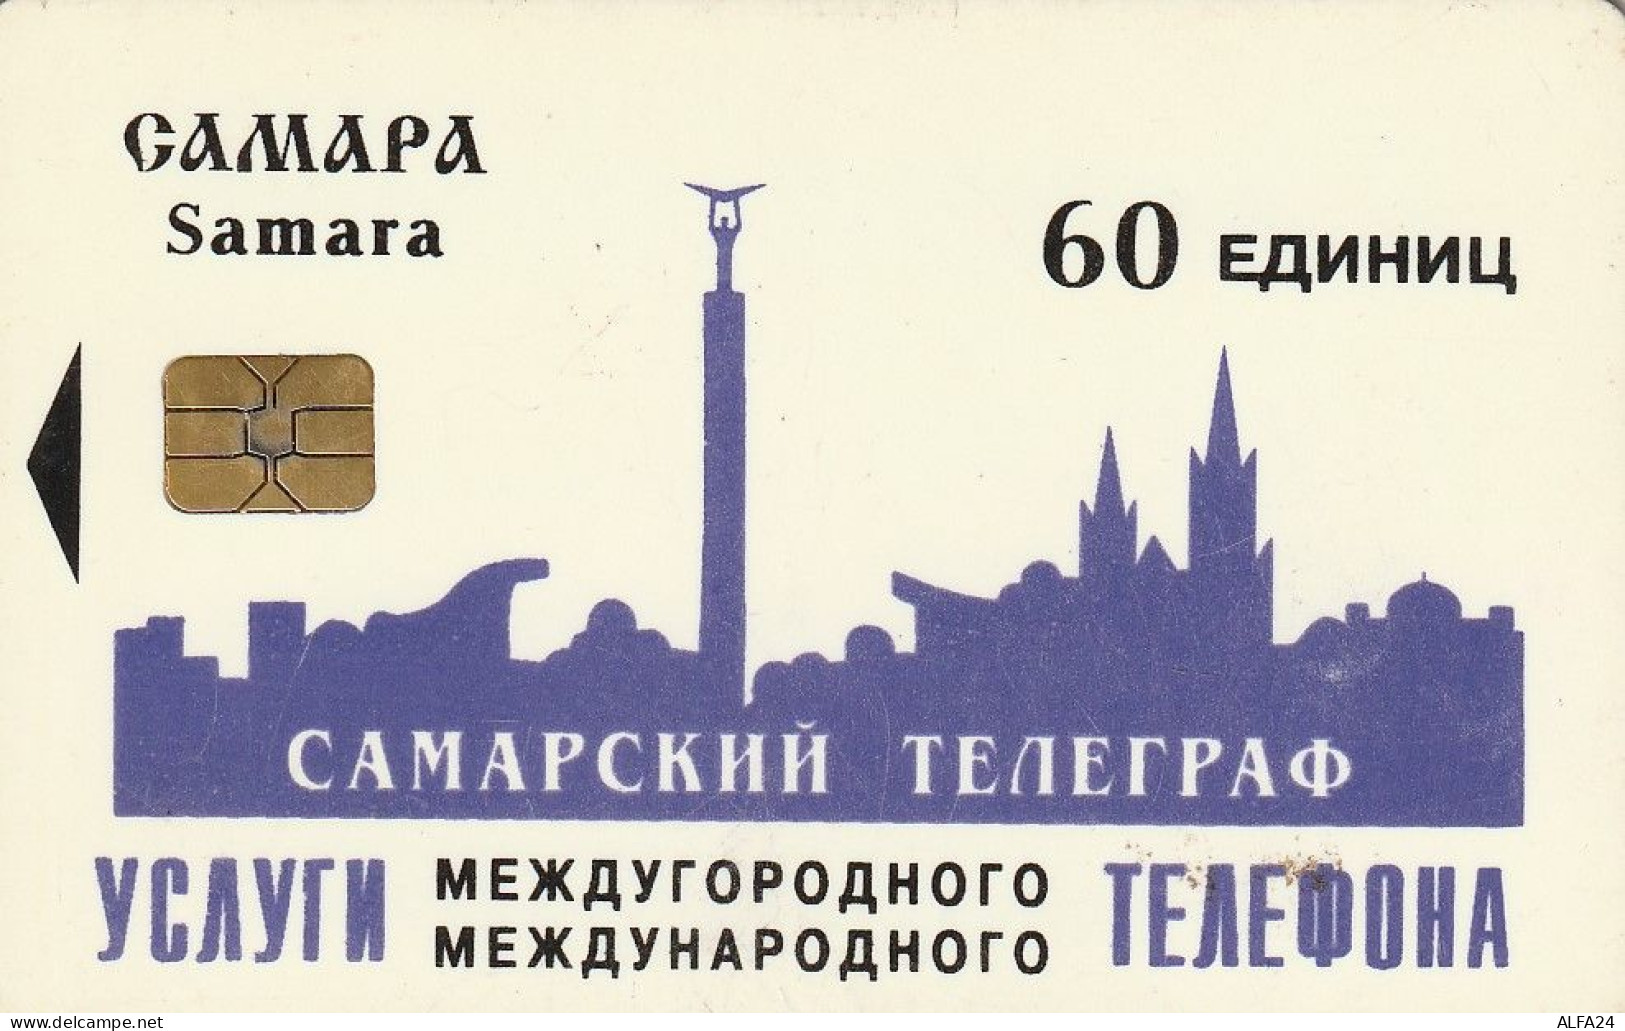 PHONE CARD RUSSIA Samara (E9.5.5 - Russia